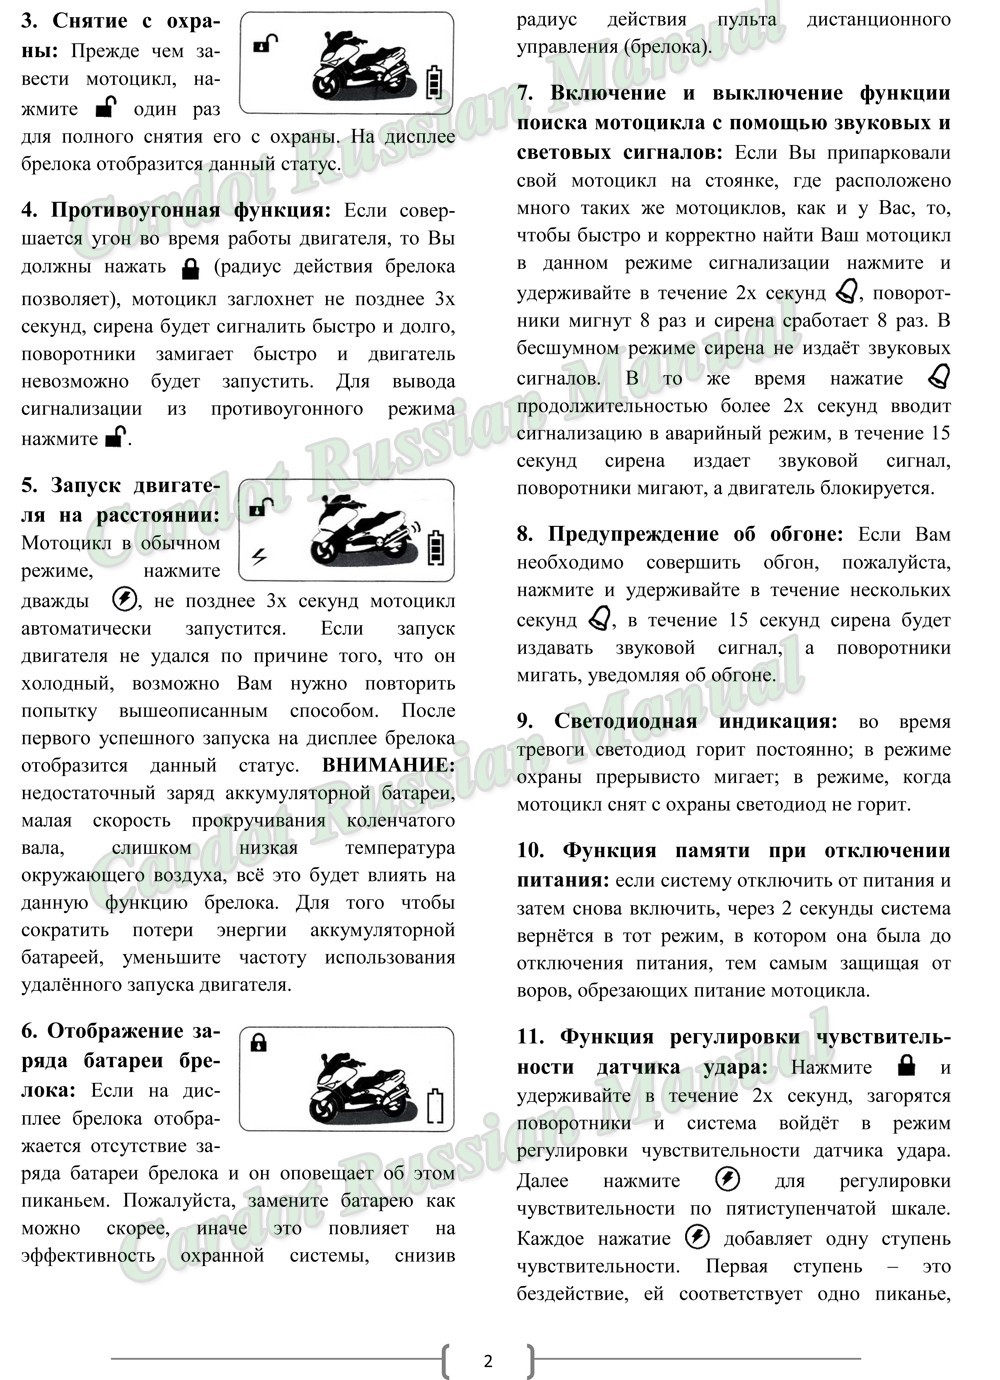 Manual_CARDOT Rus(CD-MT171)-2